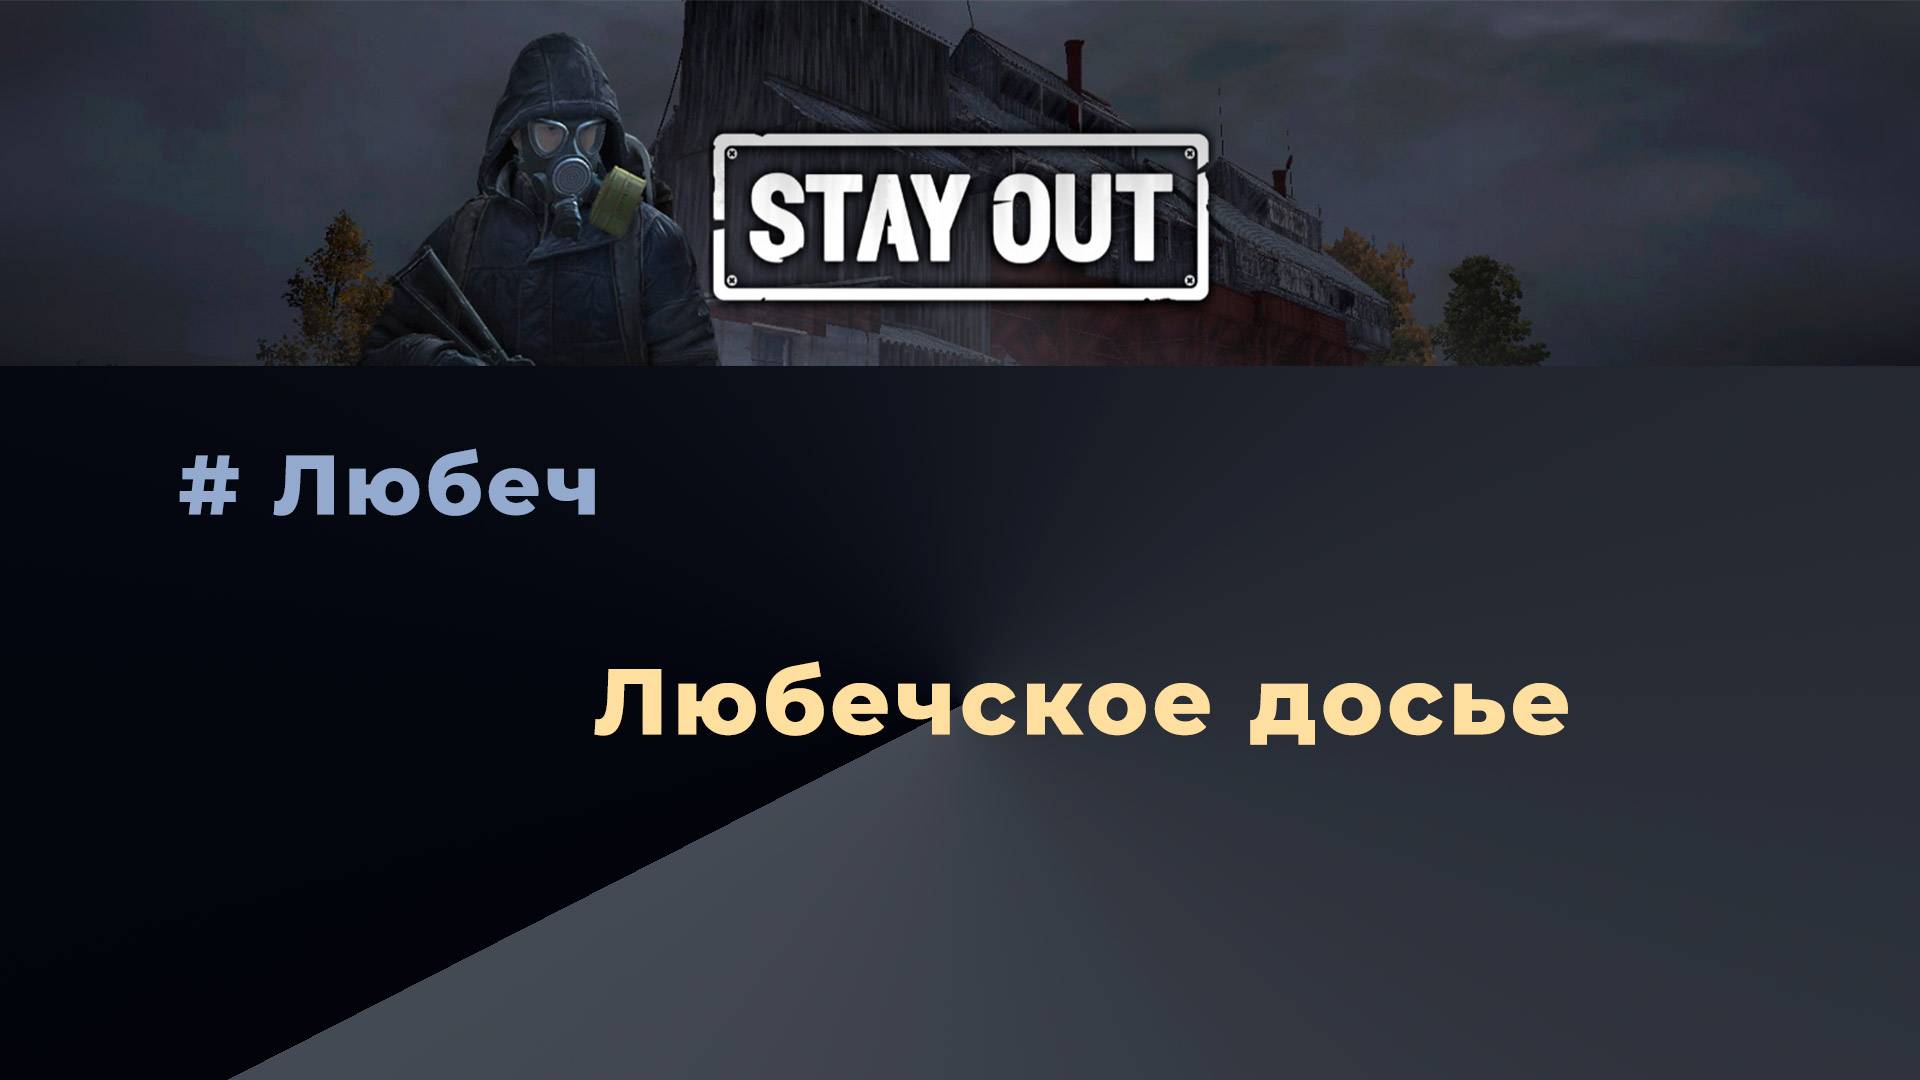 Stay Out_Любечское досье_получить 120к